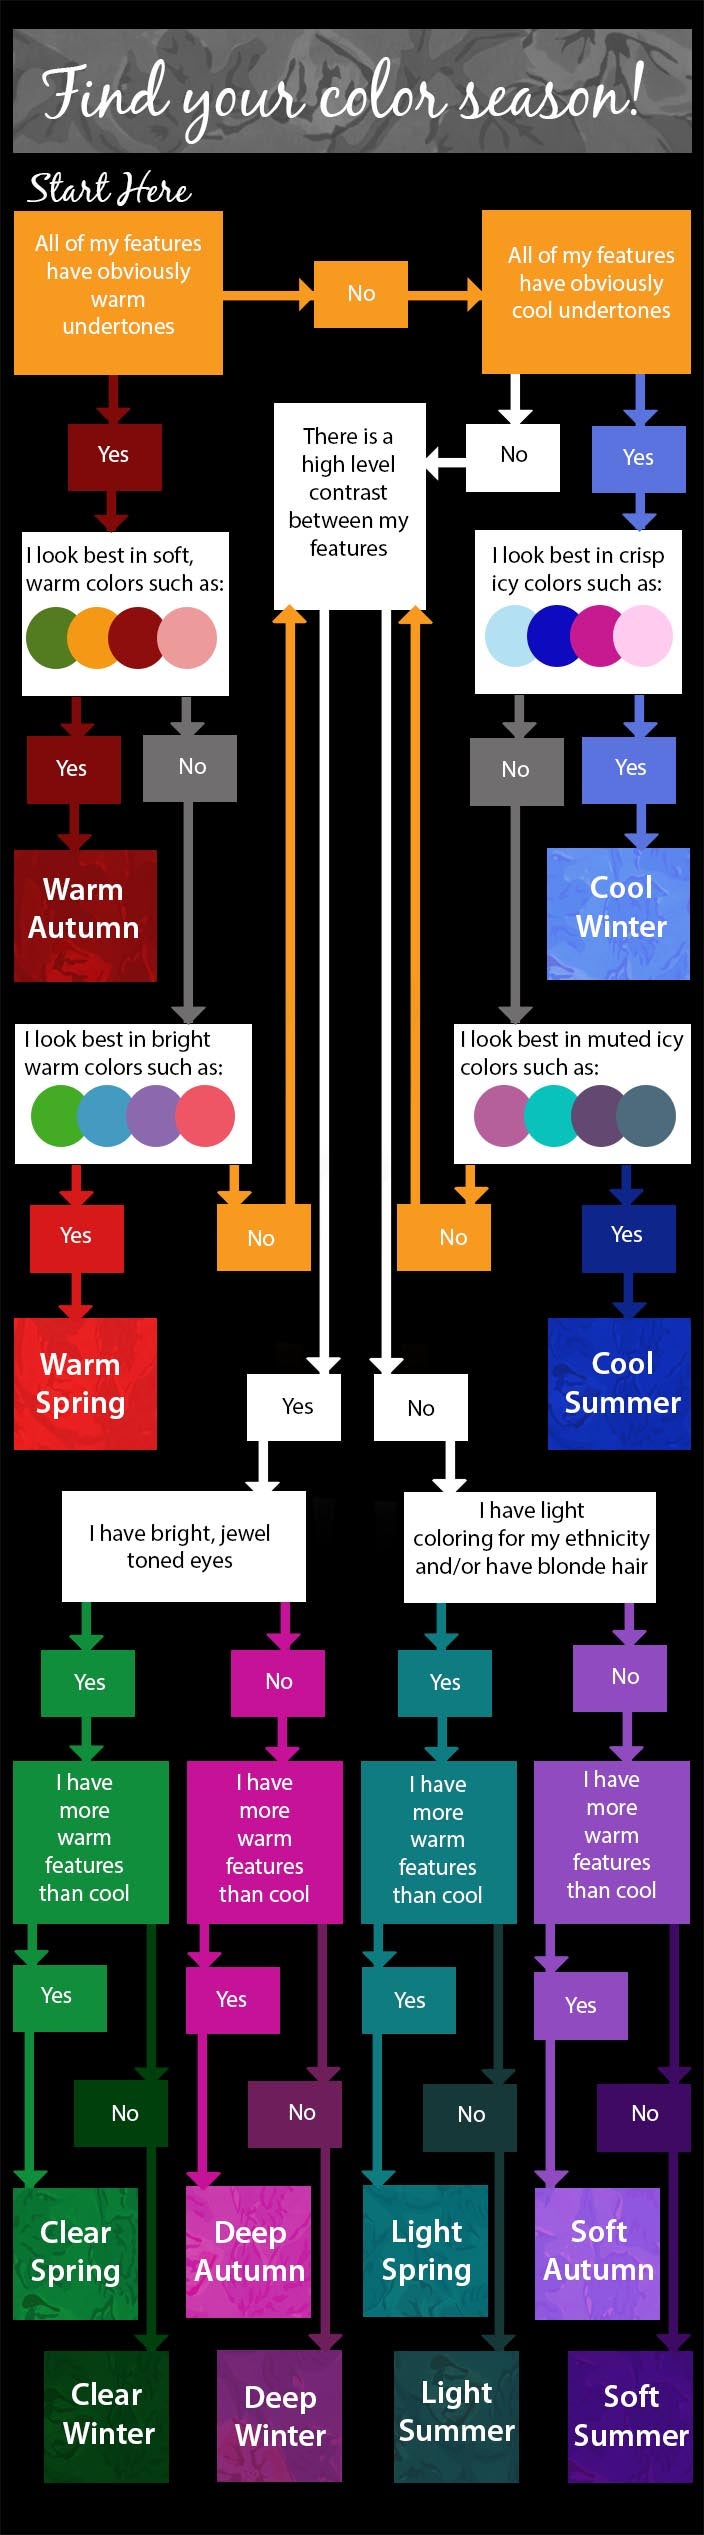 color-season-chart_1.jpg